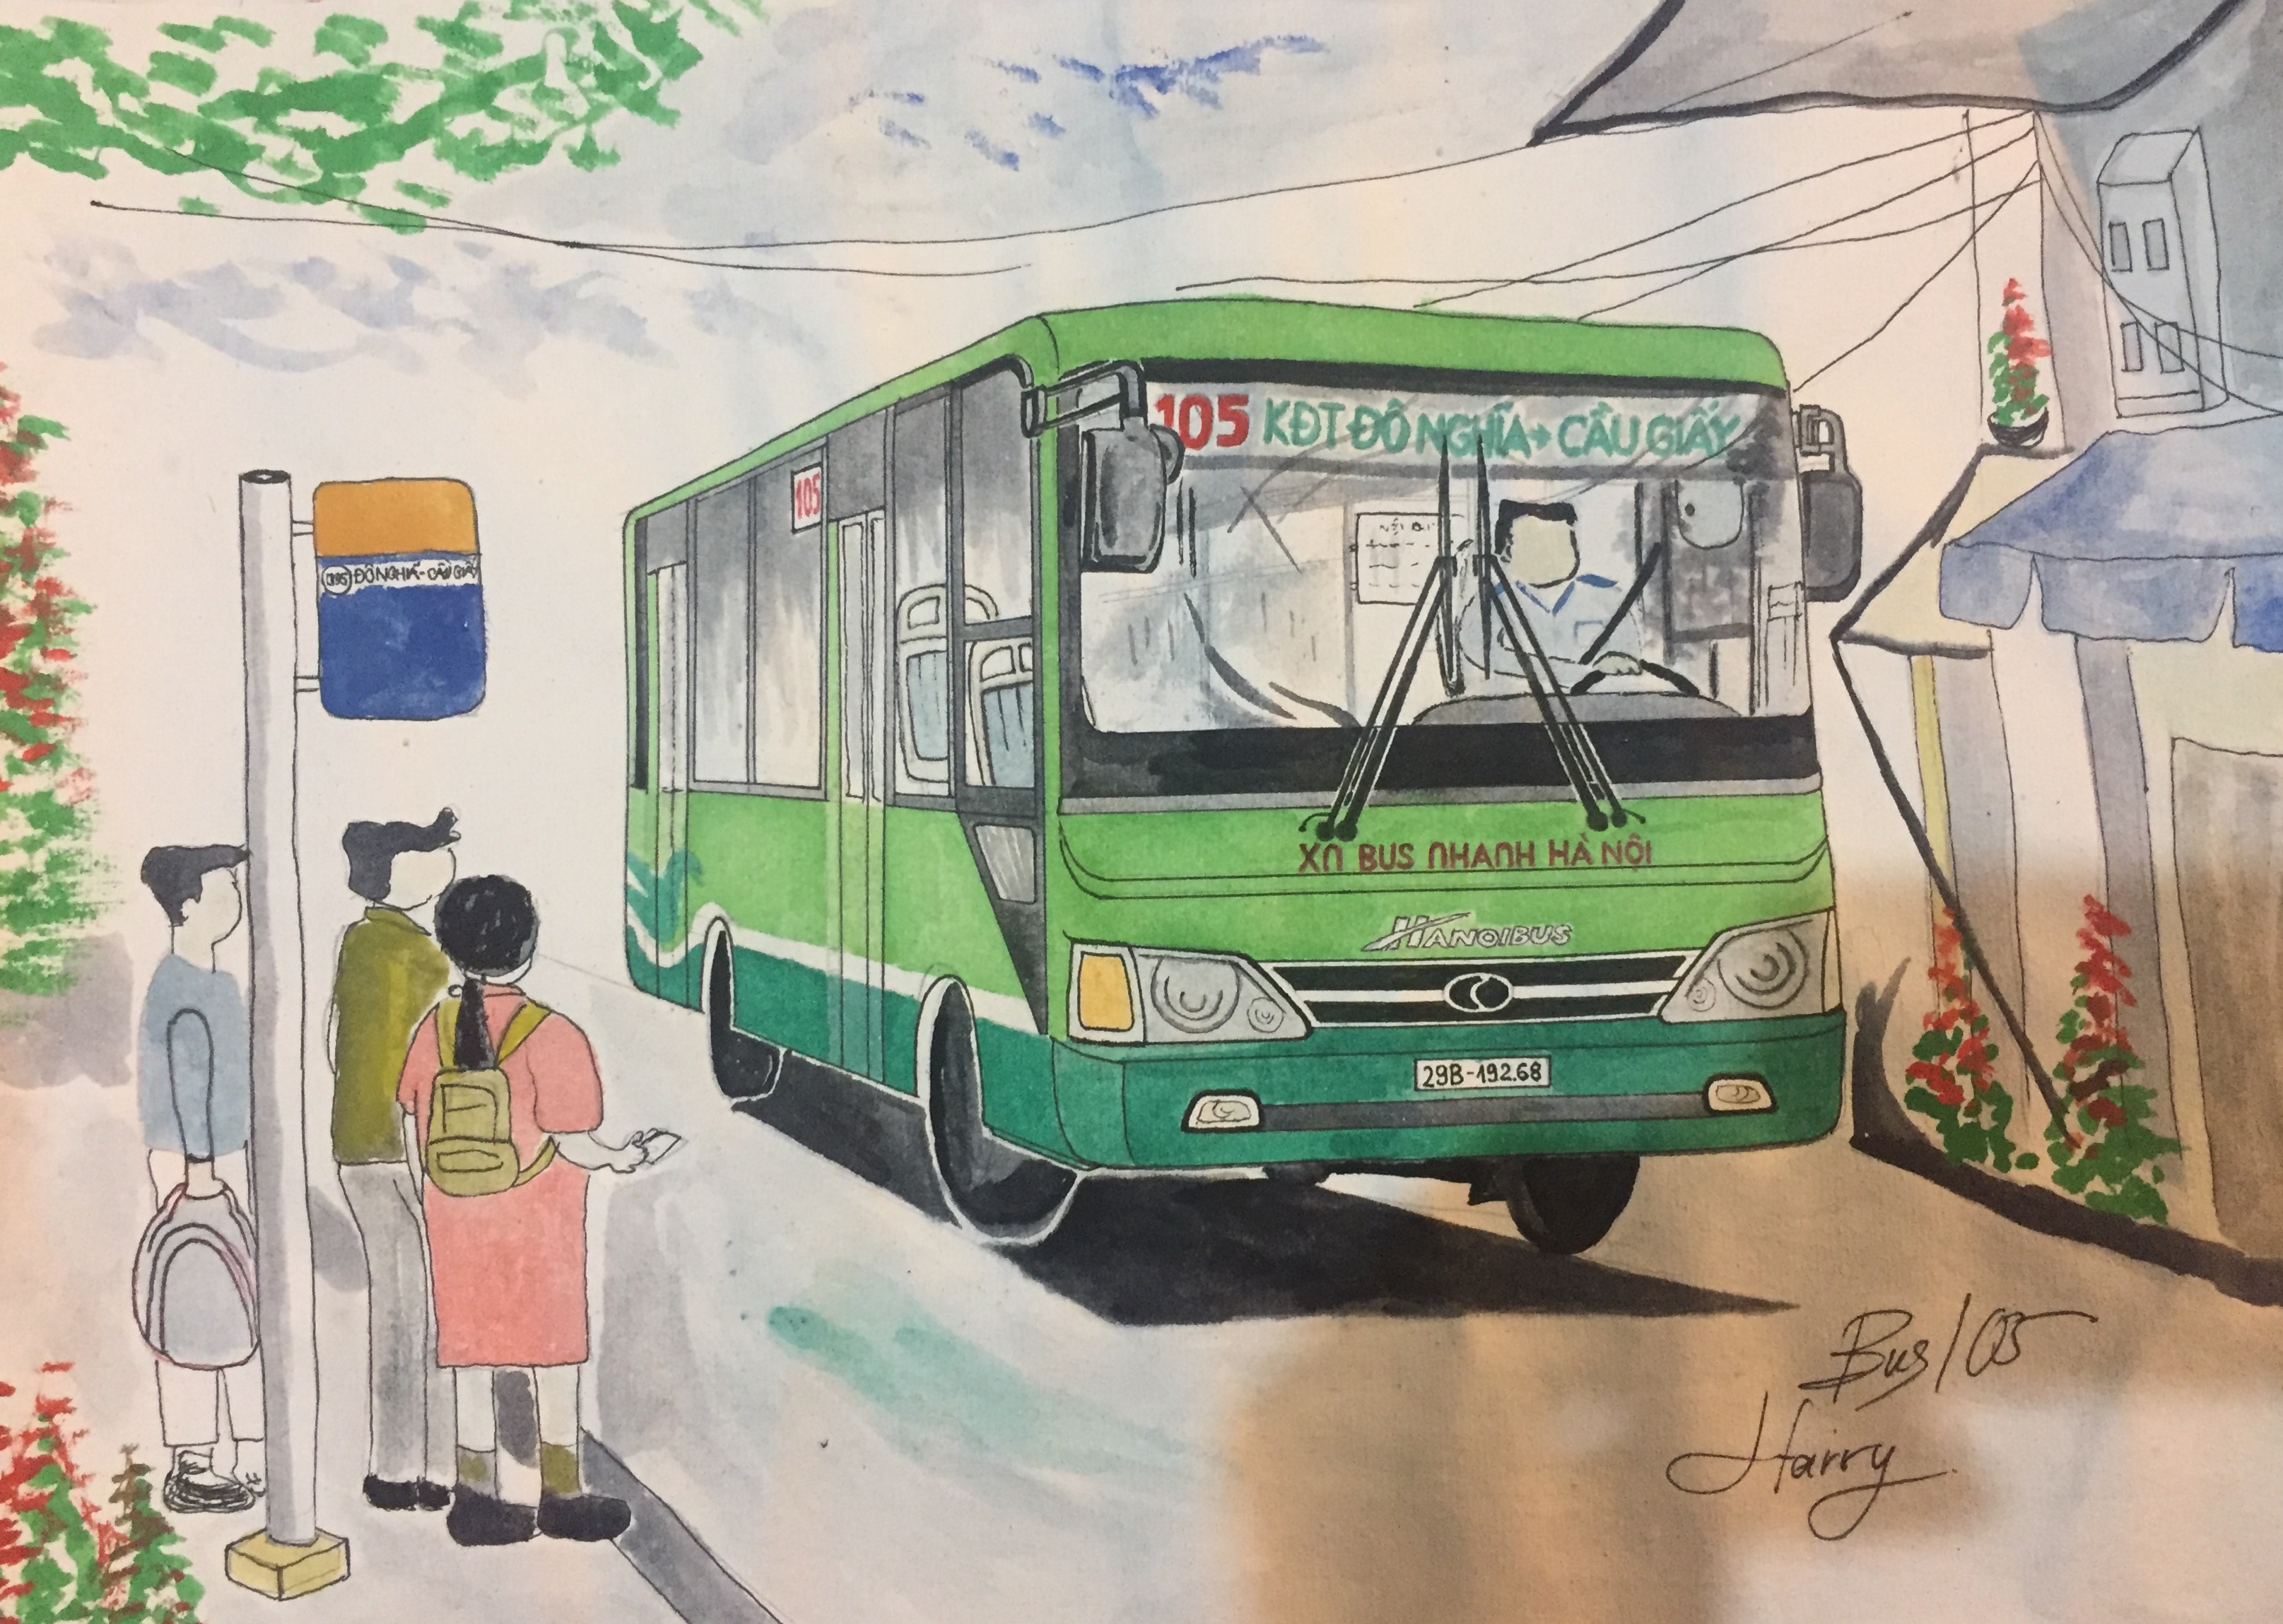 Bộ tranh vẽ các chiếc xe buýt truyền thống của Hà Nội đang chờ đón bạn khám phá. Những nét vẽ tinh tế sẽ làm bạn cảm thấy thích thú và nhớ lại những kỉ niệm xưa. Nhấp vào hình ảnh để xem bộ tranh này nhé!